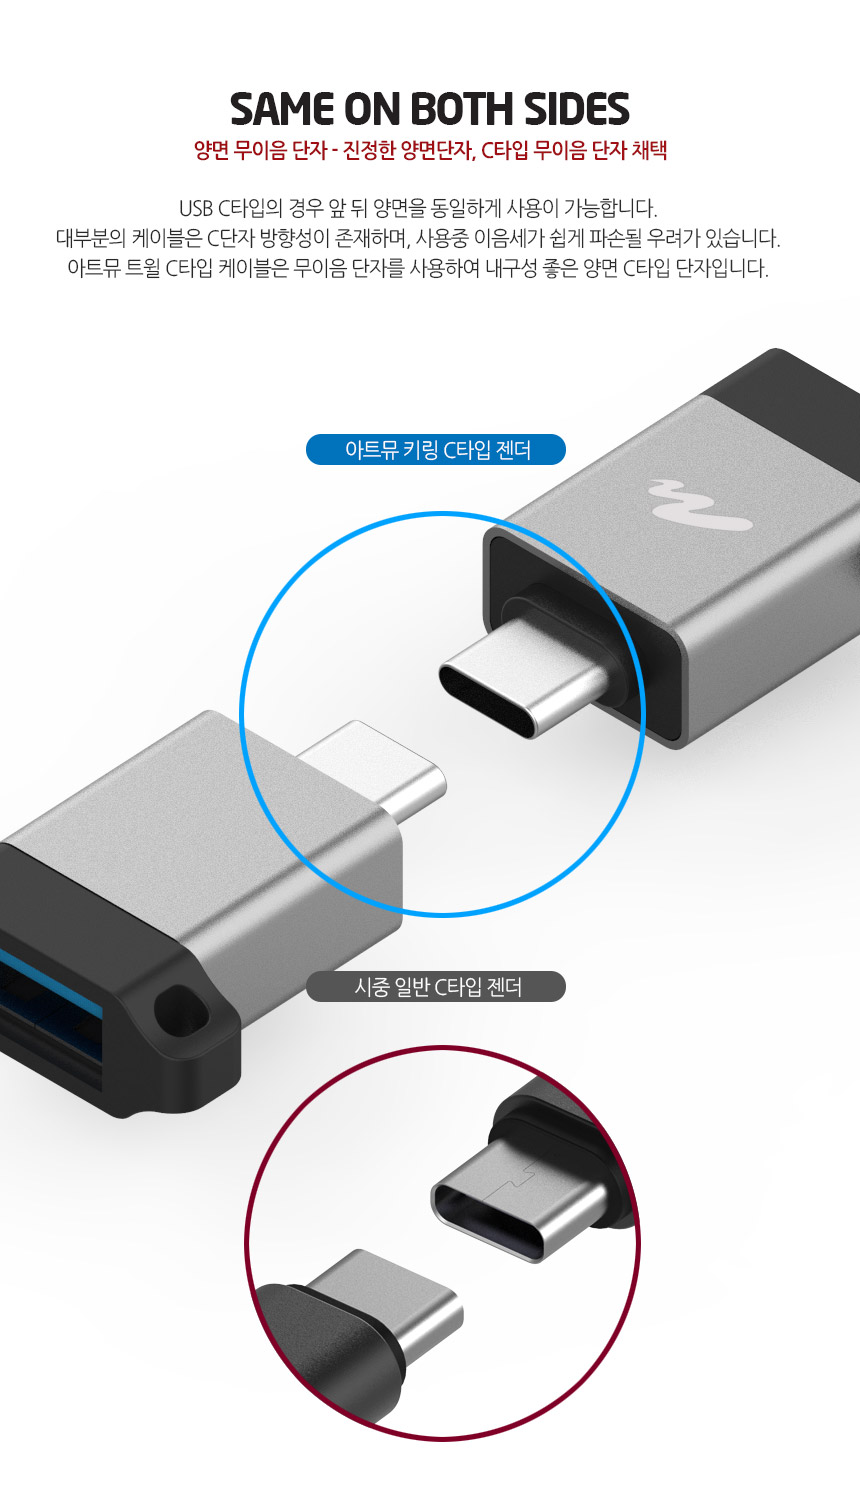 키링 USB 3.1 C타입 OTG 젠더 4,500원 - 아트뮤 디지털, PC저장장치, USB, OTG 바보사랑 키링 USB 3.1 C타입 OTG 젠더 4,500원 - 아트뮤 디지털, PC저장장치, USB, OTG 바보사랑